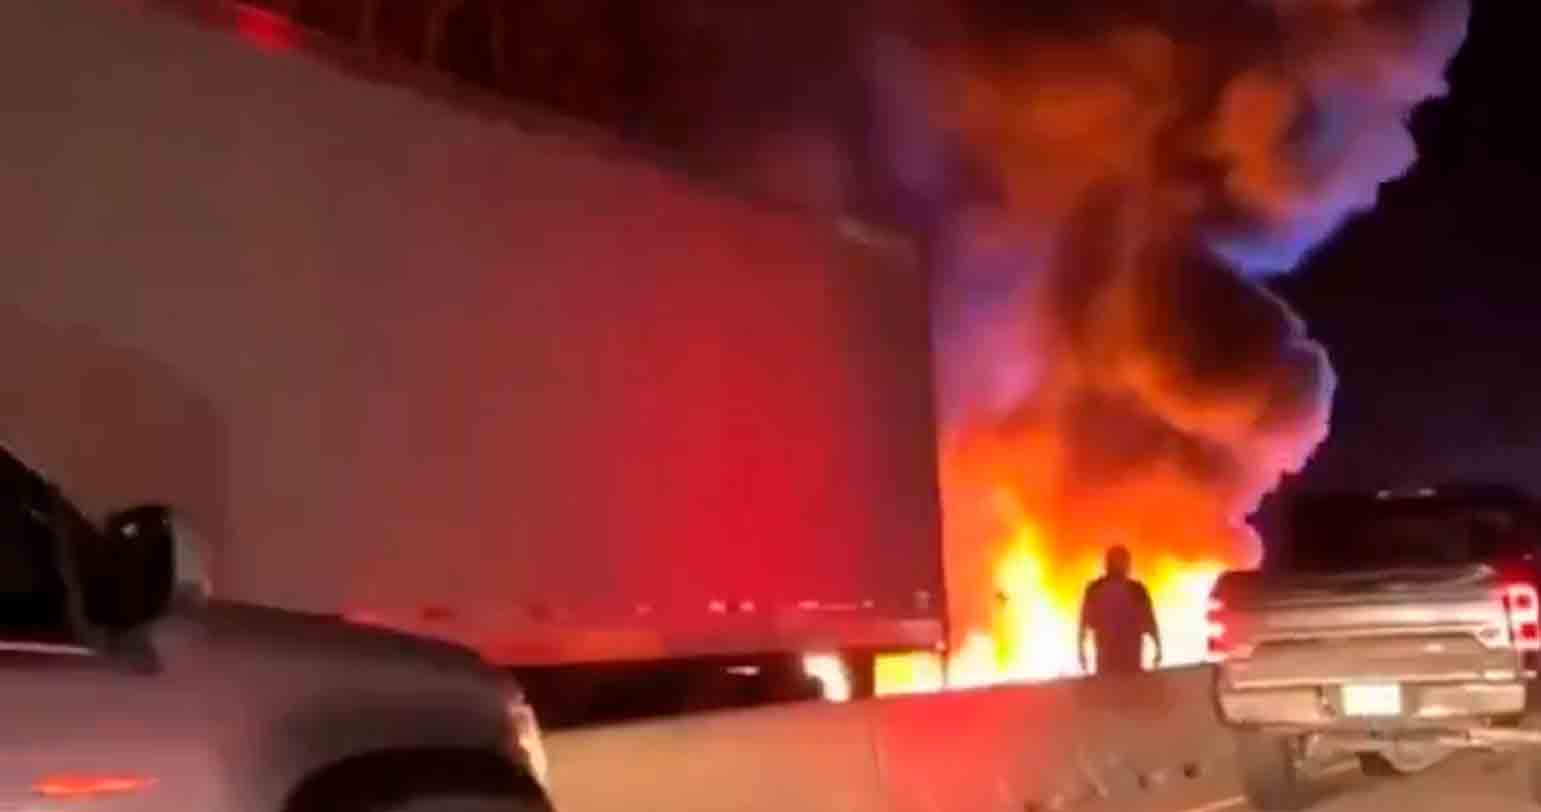 Wideo: Samolot rozbija się i wybucha na autostradzie w Karolinie Północnej, 2 osoby uciekają z poważnymi obrażeniami. Wideo i zdjęcia: Odtworzenie Twittera @tworldreviews / @vanhoa2272